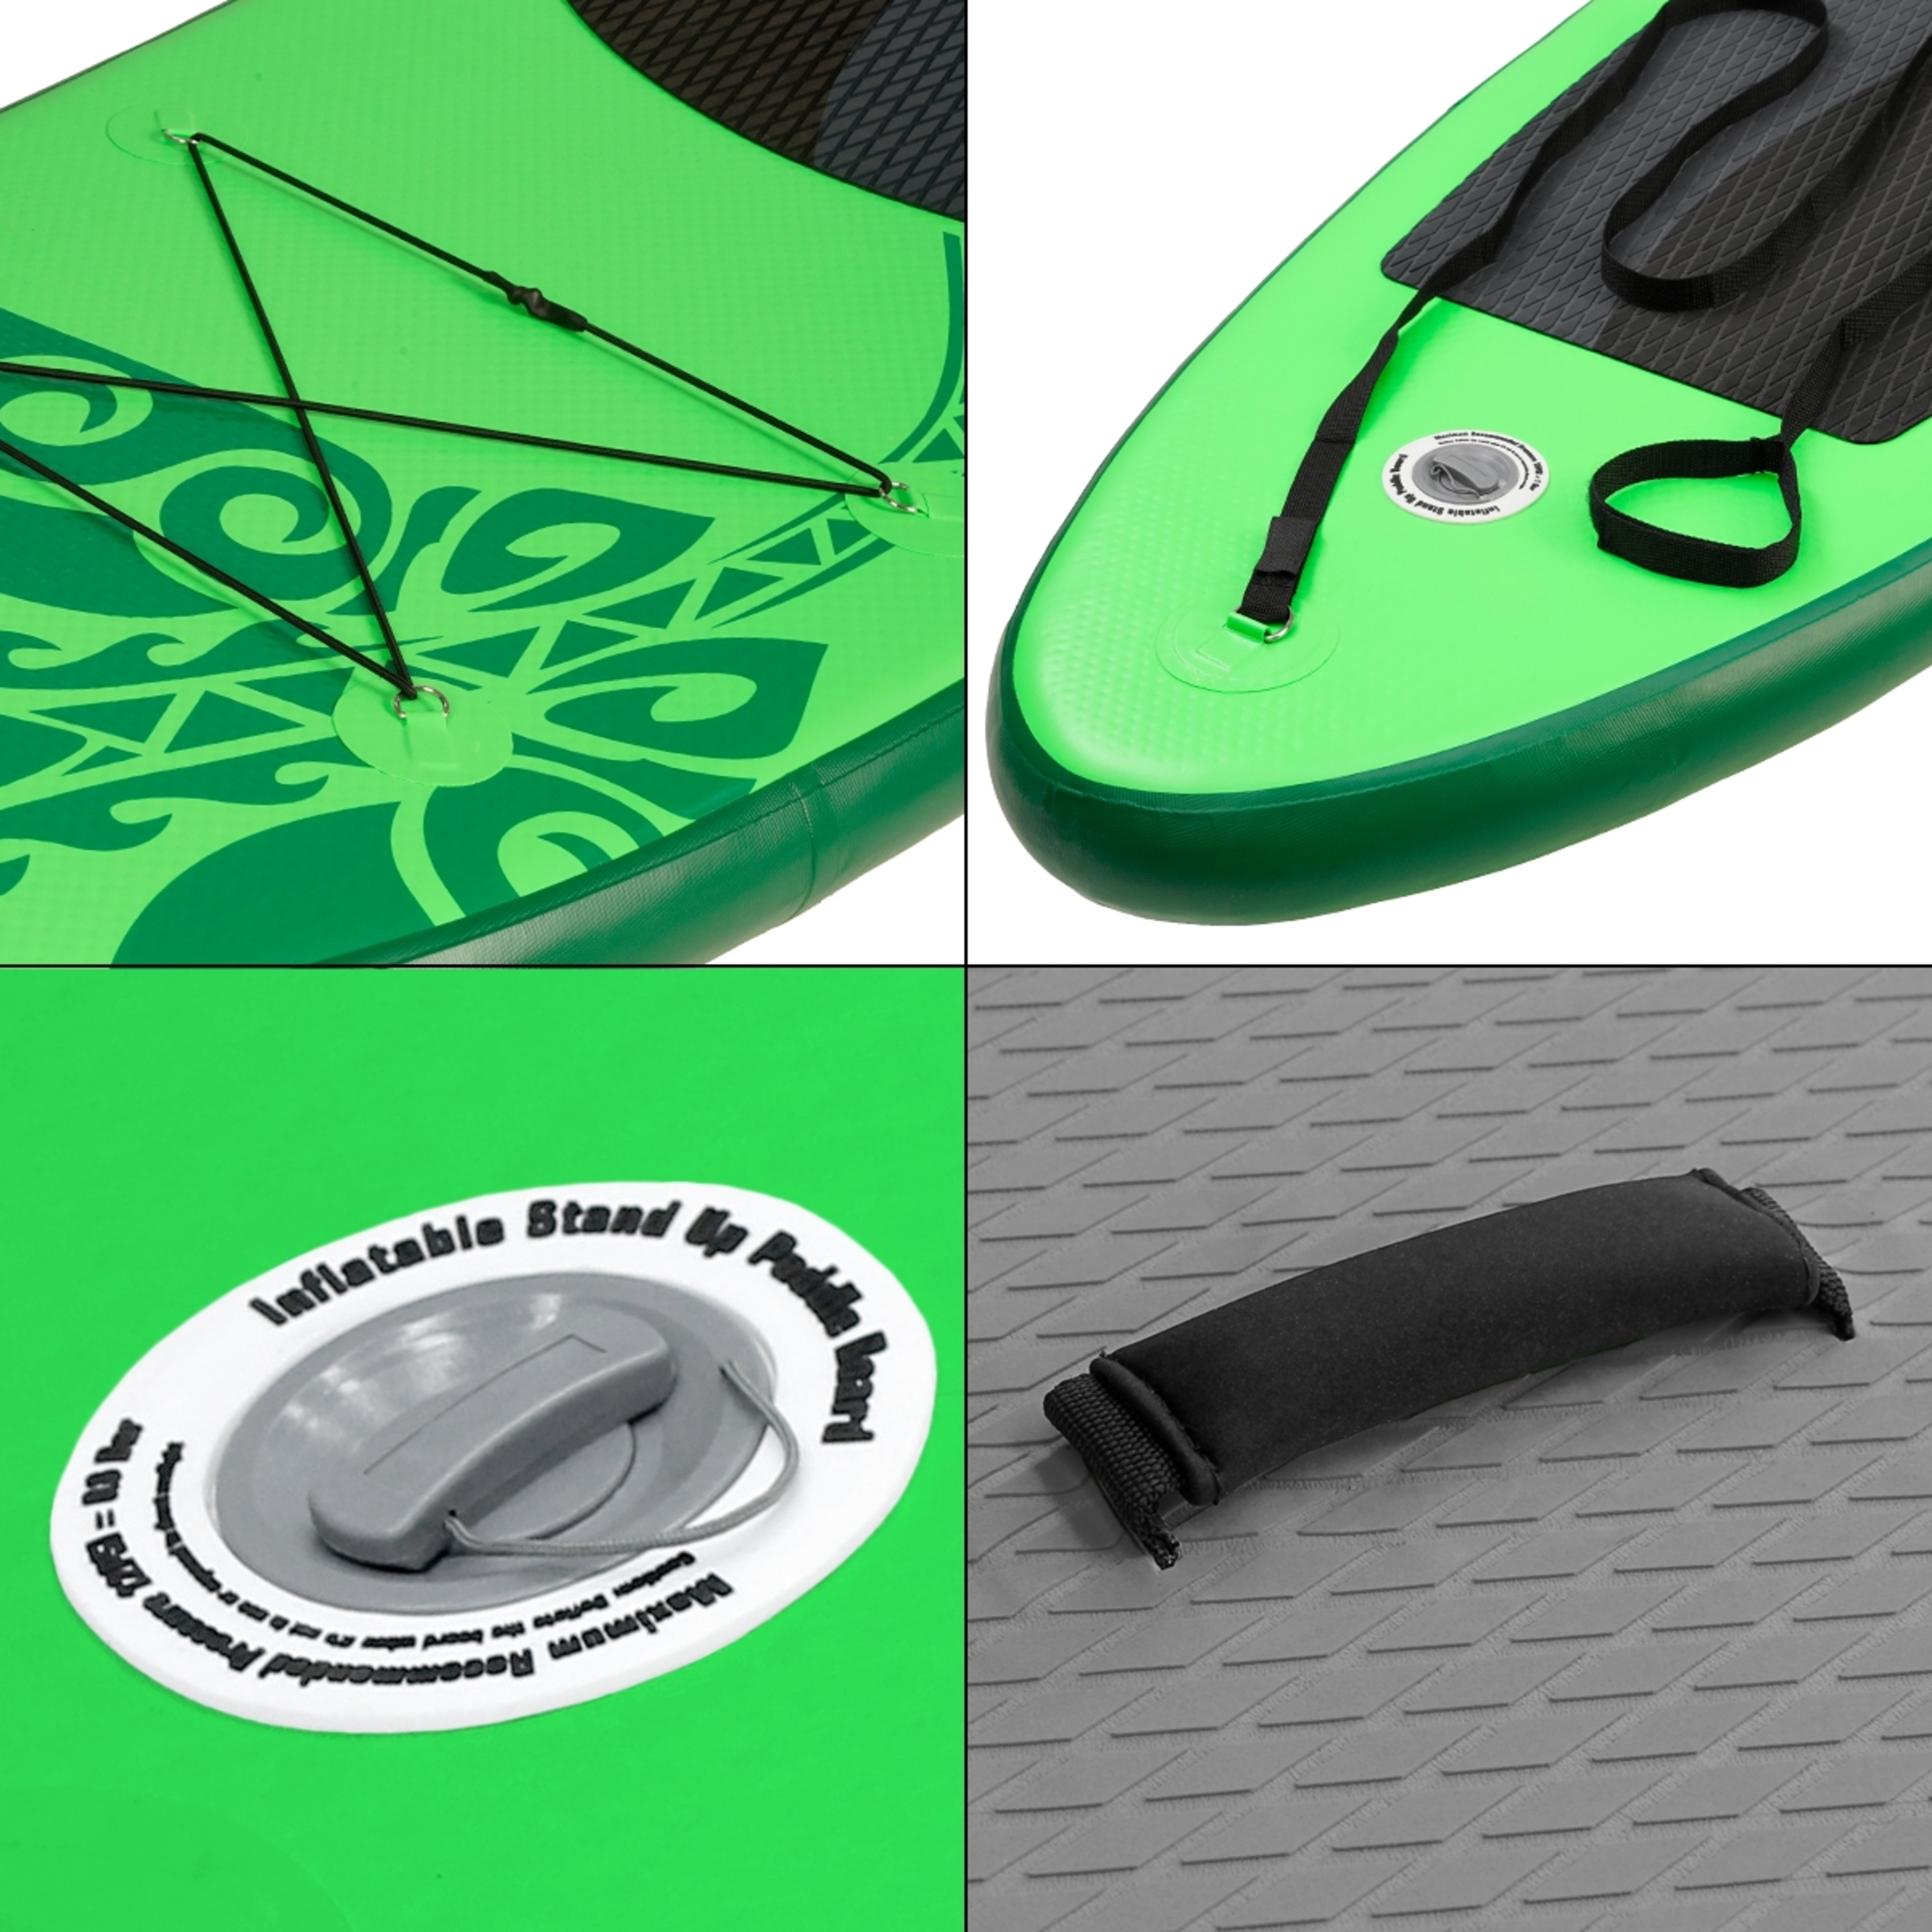 Ecd-germany Tabla Hinchable De Paddle Surf Sup Con Accesorios - Verde/Negro - Una fantástica tabla allround  MKP